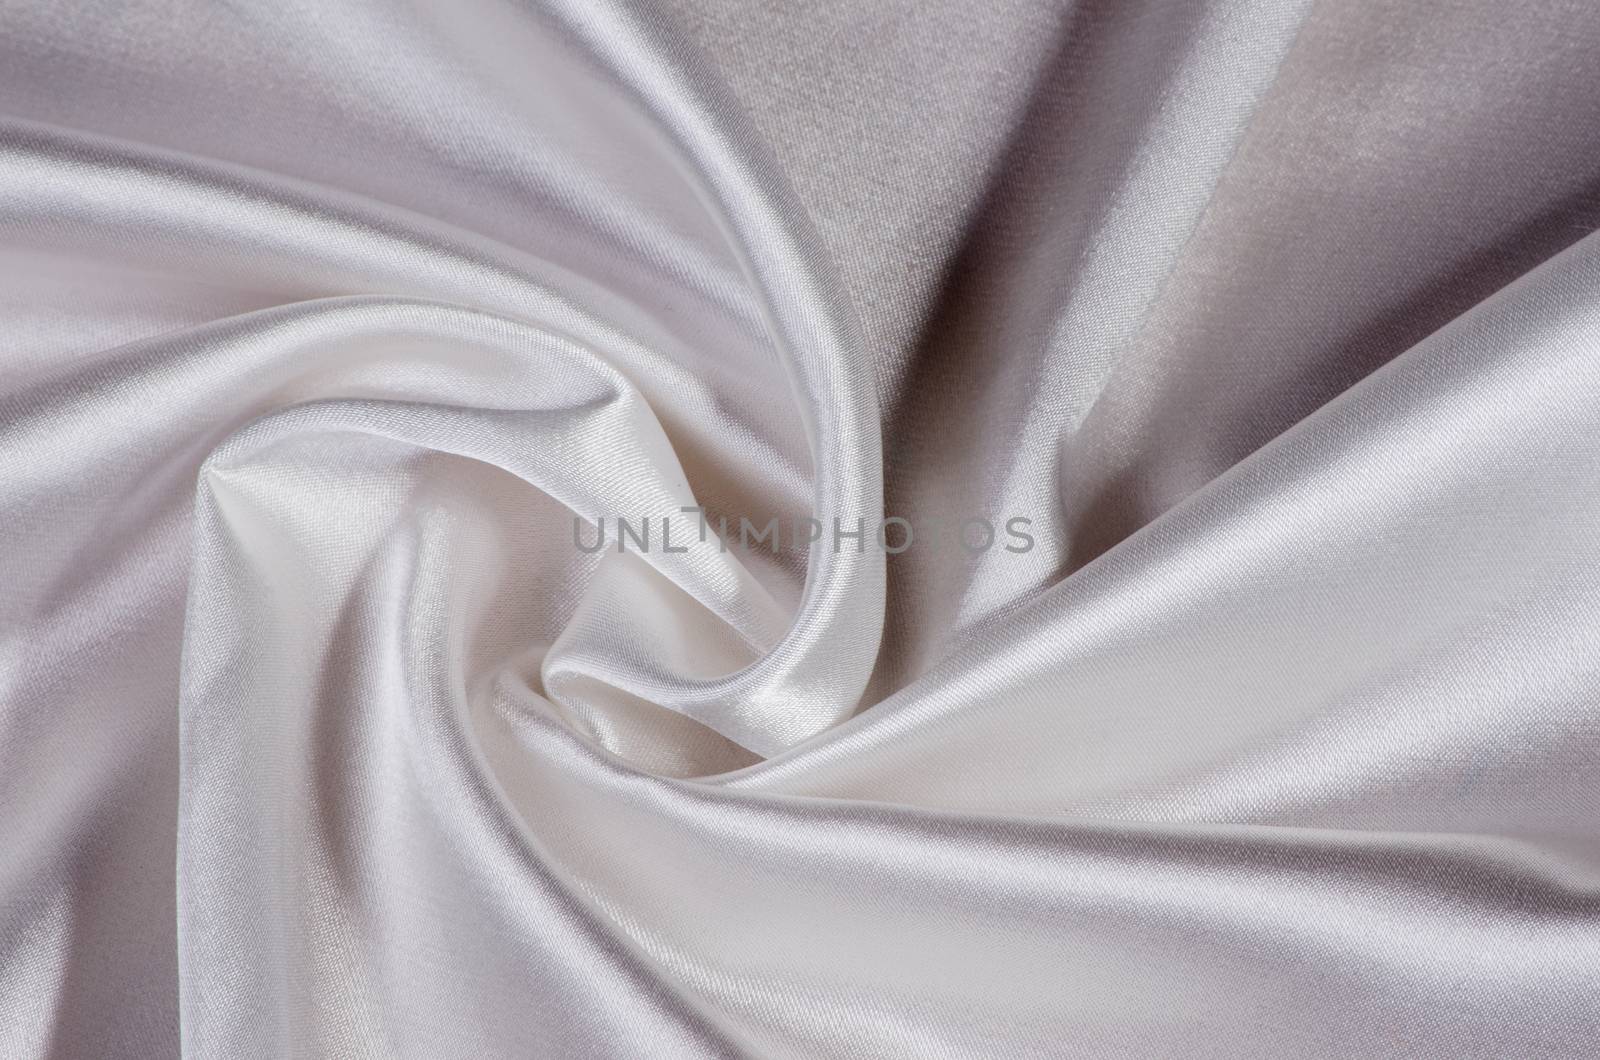 silk satin fabric